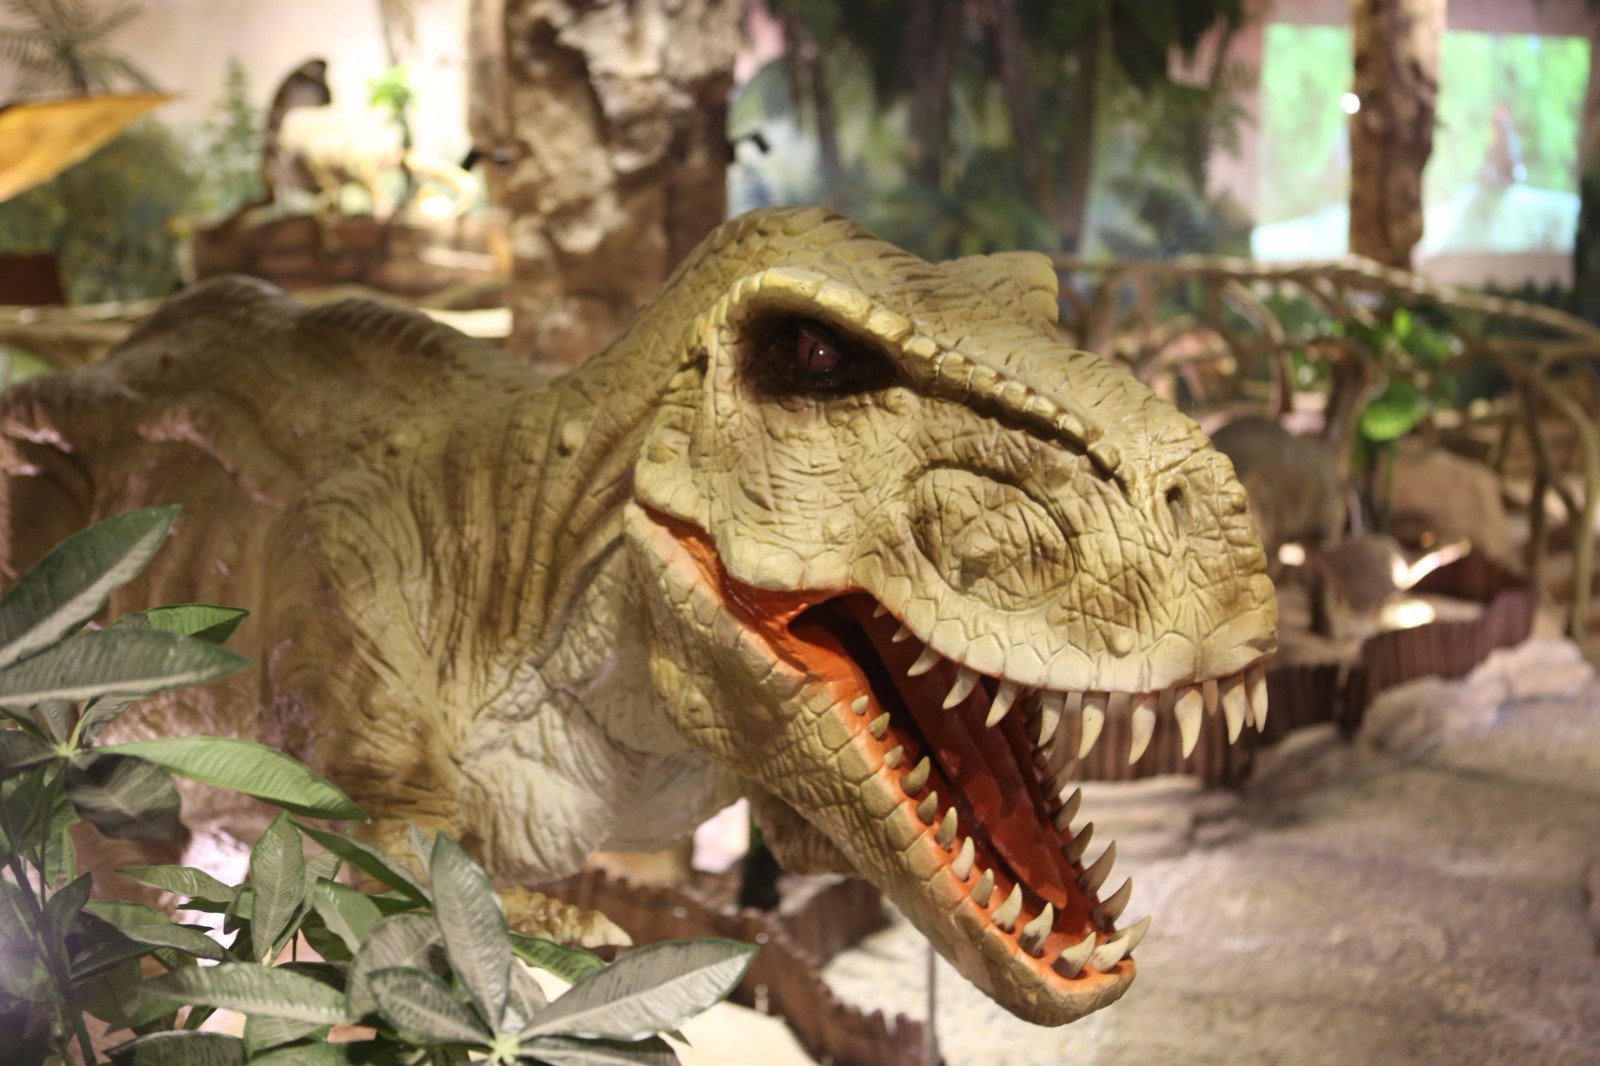 侏罗纪恐龙嘉年华走进水城古镇喜迎端午佳节 – 新贵州